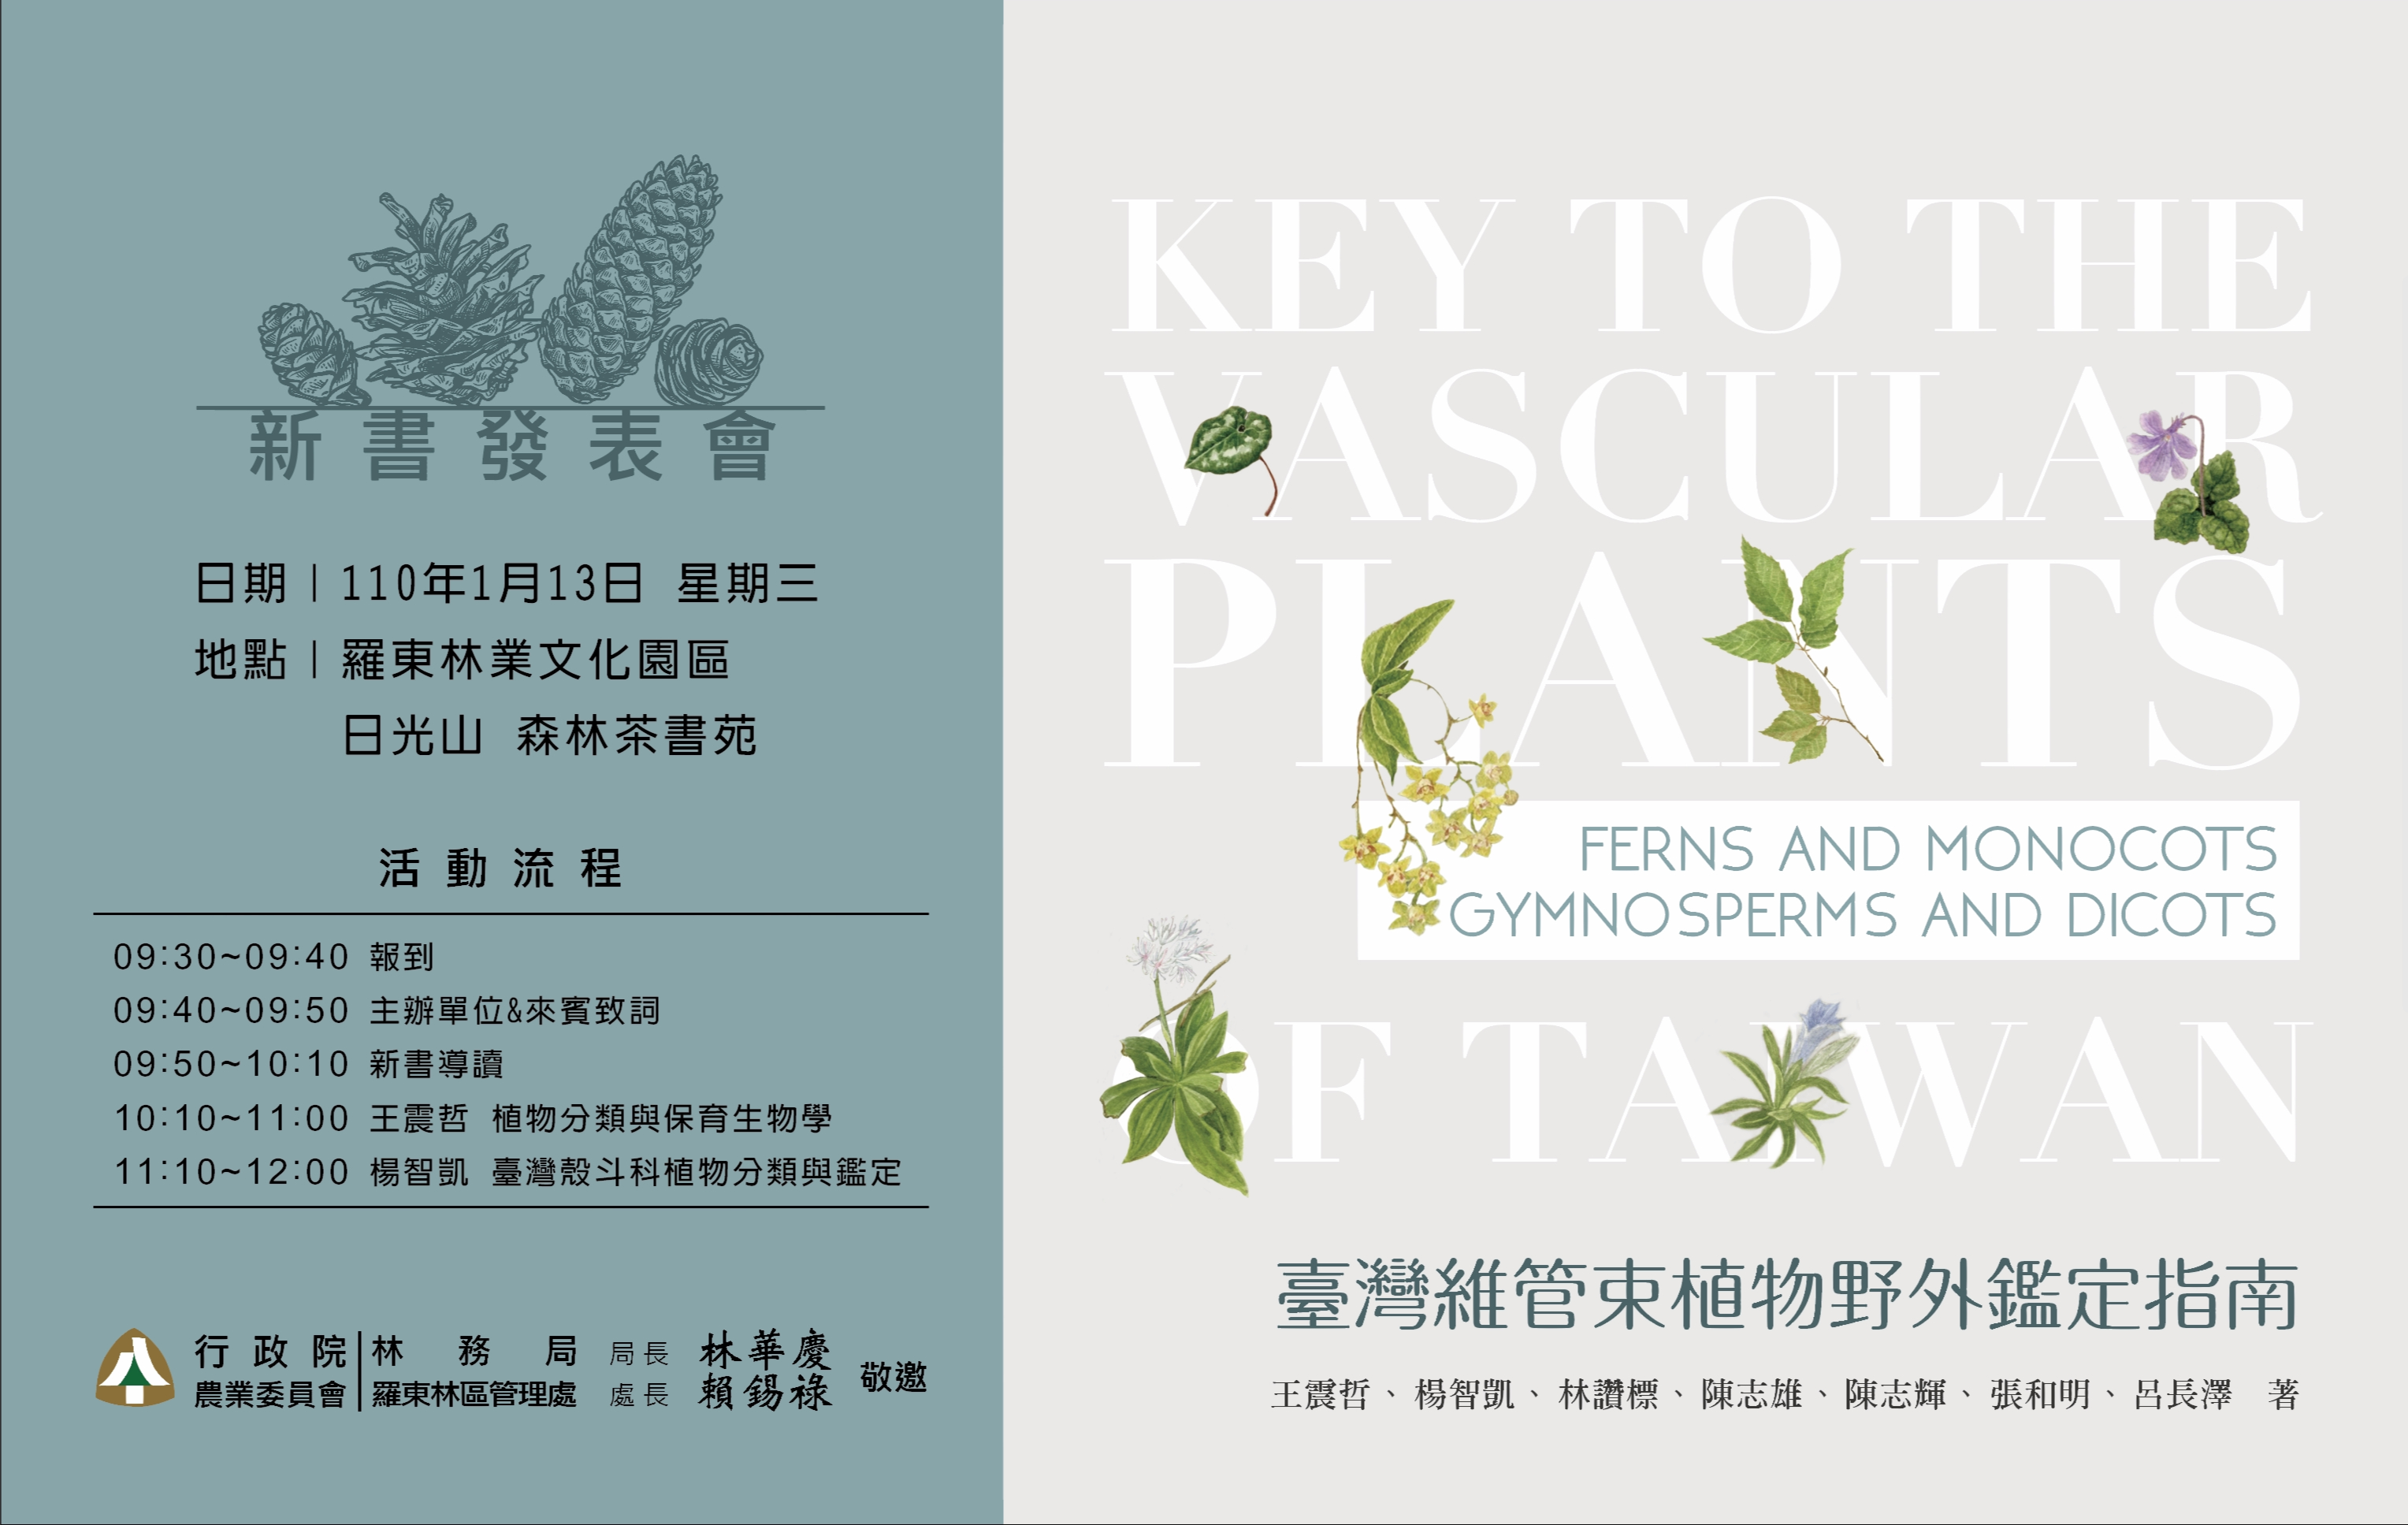 台湾维管束植物野外鉴定指南 新书发表 大纪元